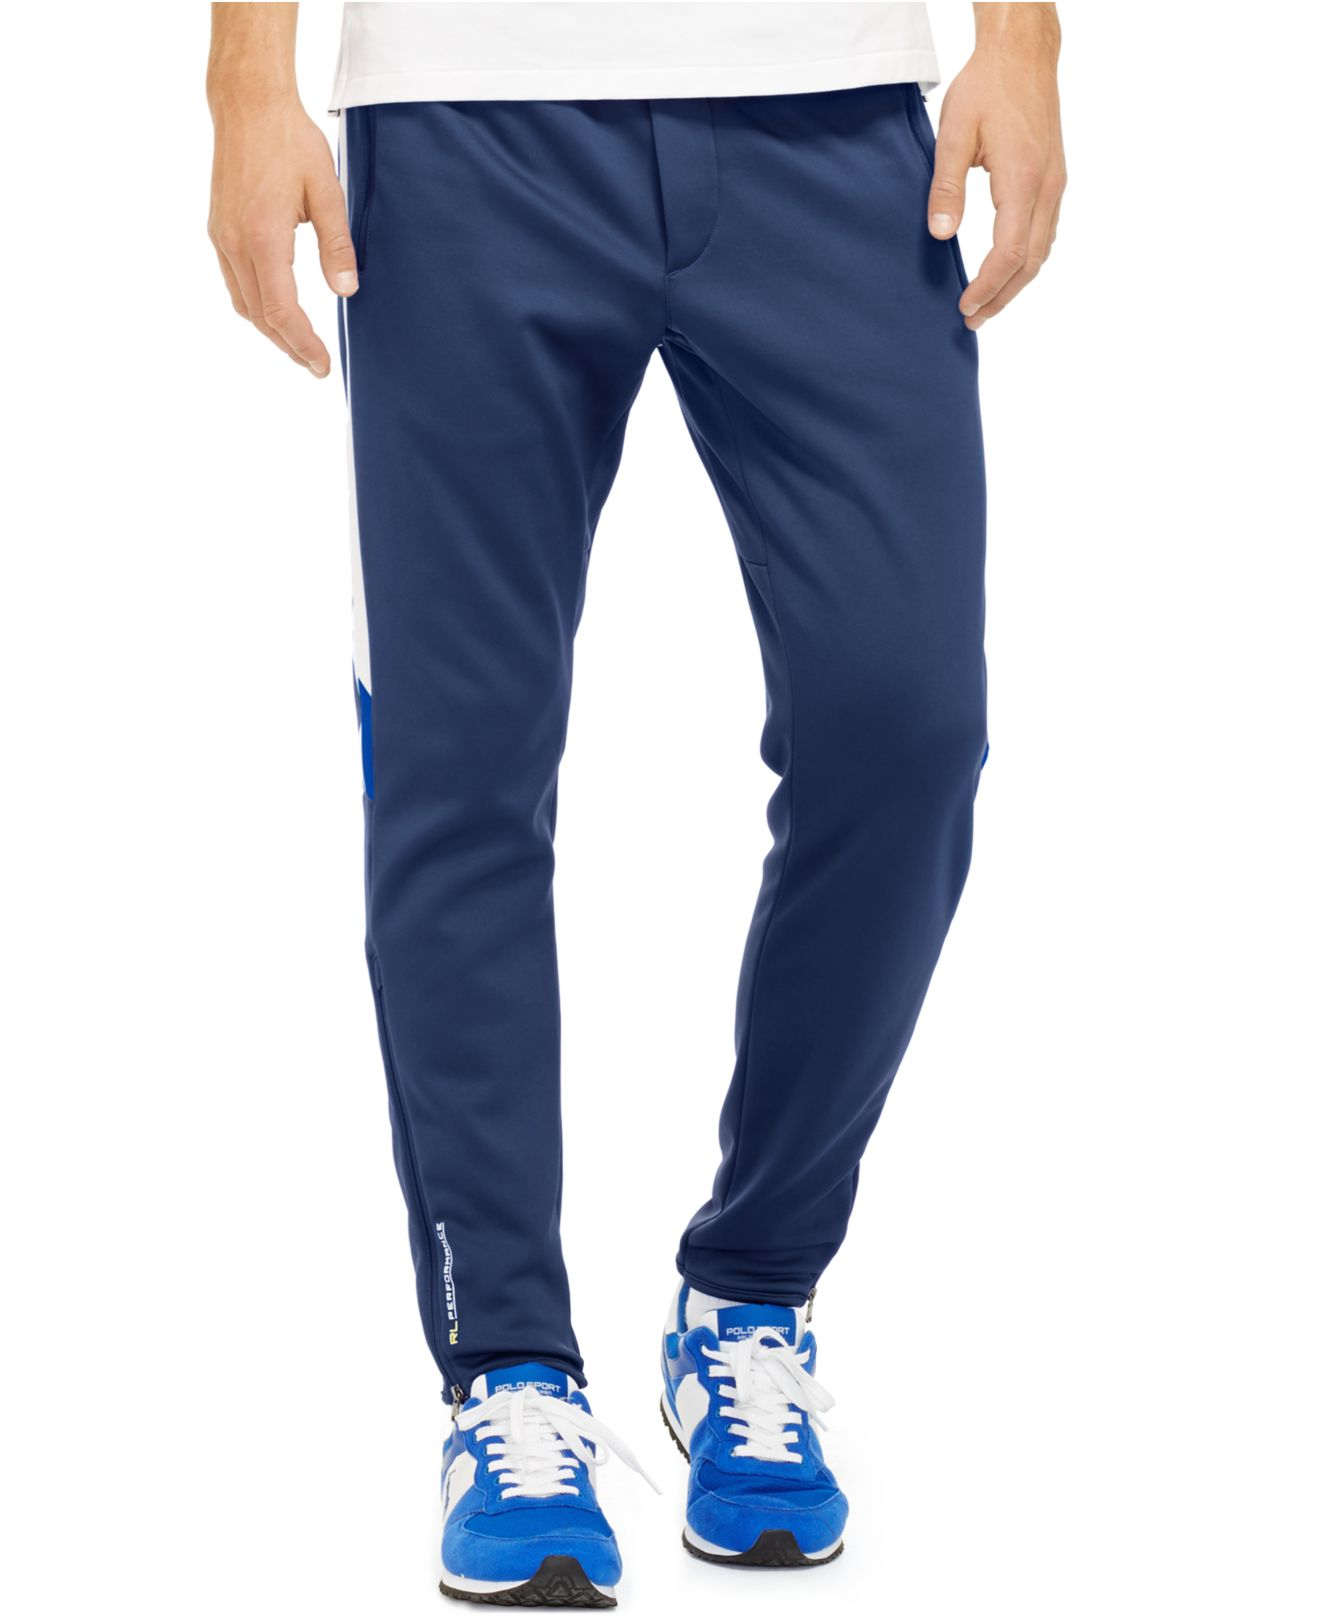 Lyst - Polo ralph lauren Polo Sport Tech Fleece Track Pants in Blue for Men